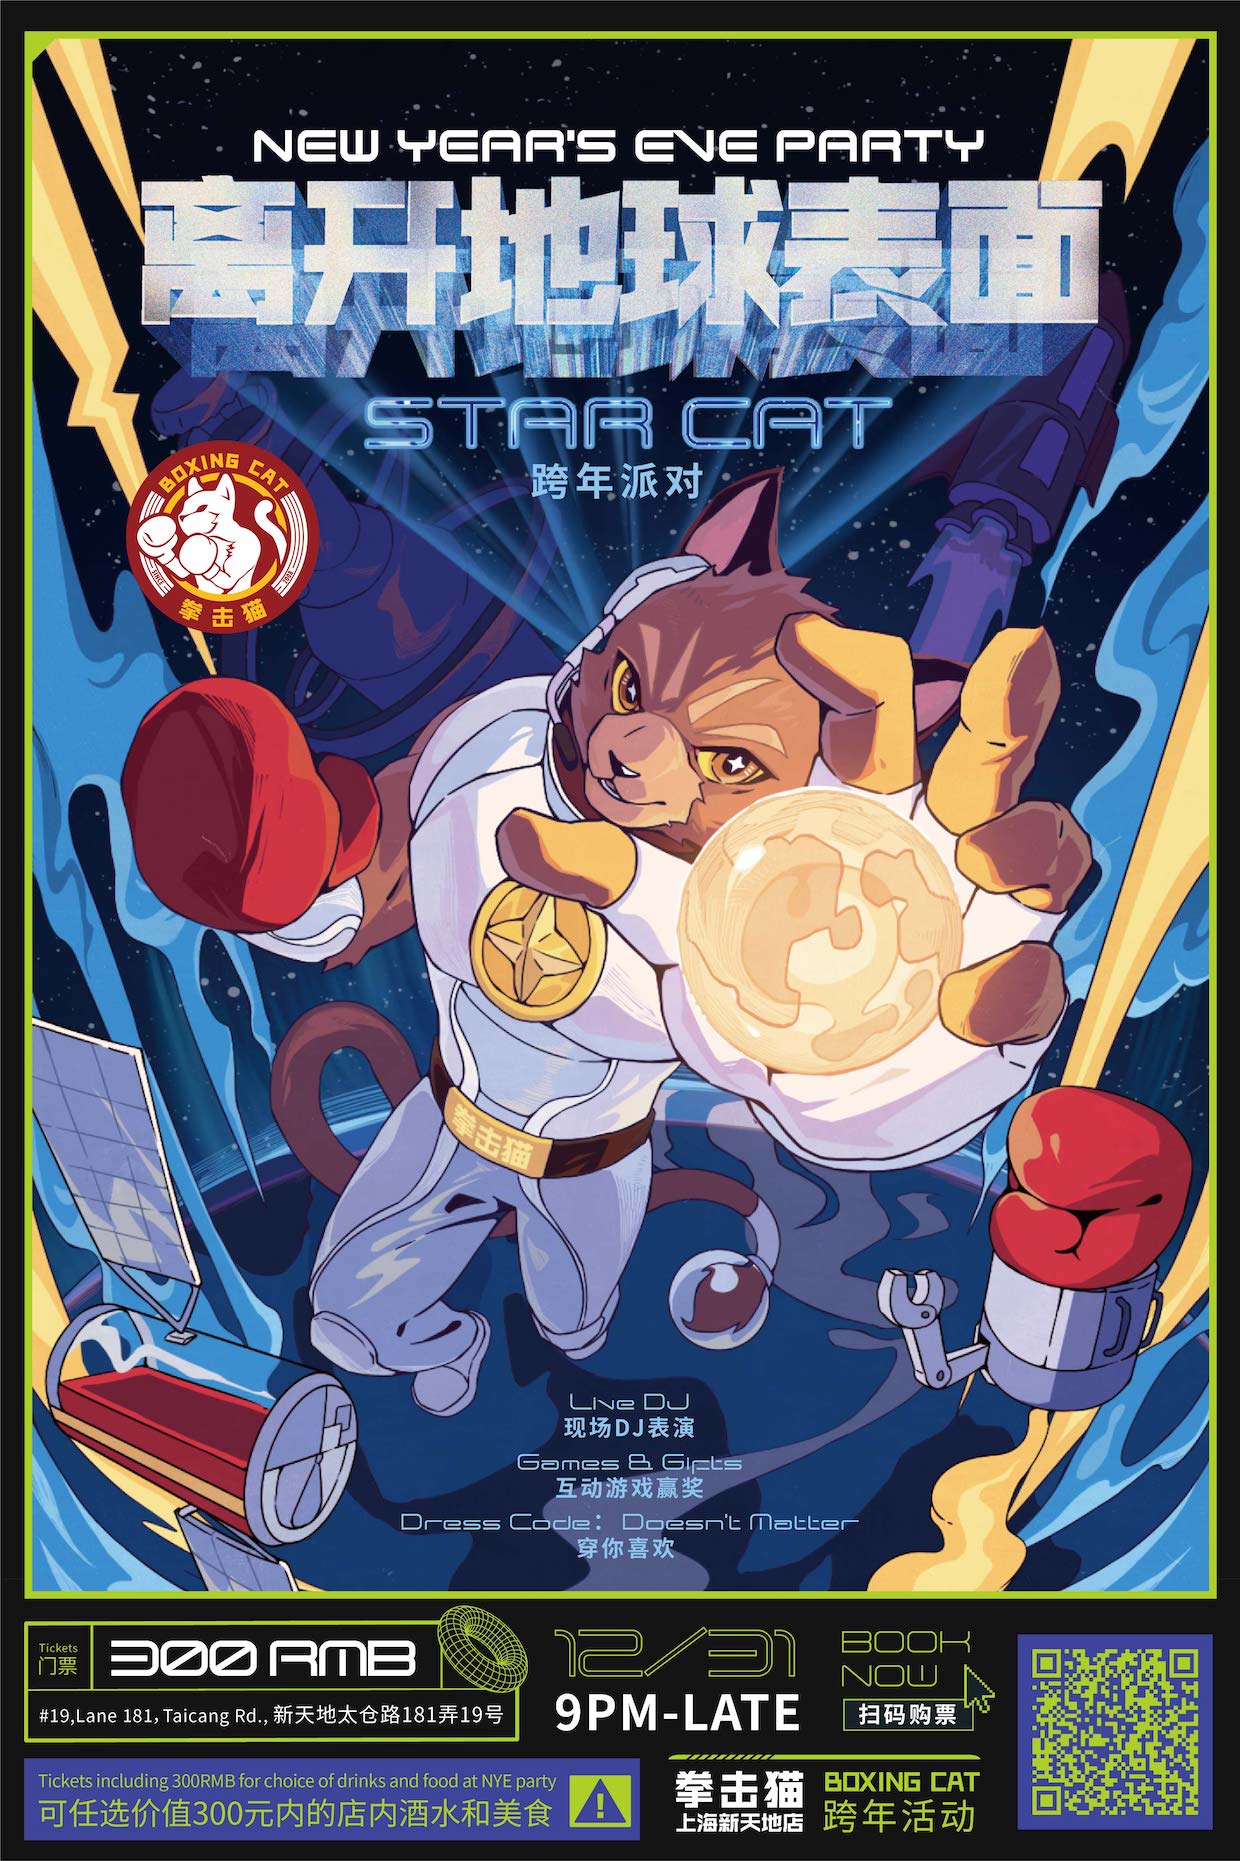 Boxing-Cat-XTD---StarCat.jpg